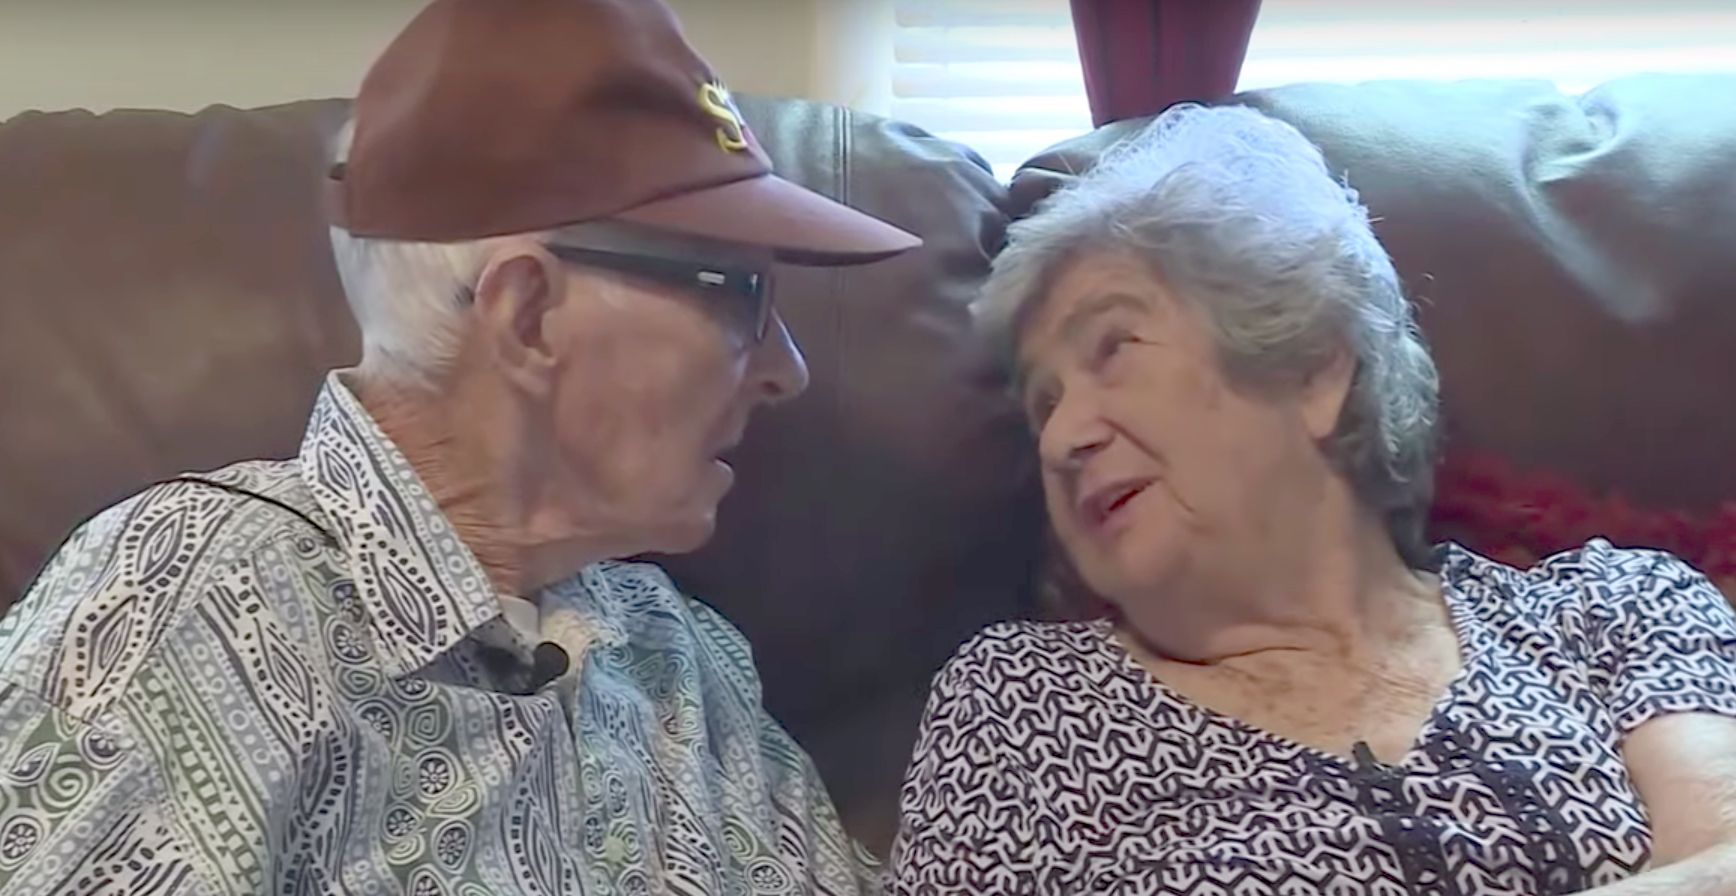 La conmovedora historia de amor de una pareja que muere el mismo día tras 71 años de matrimonio